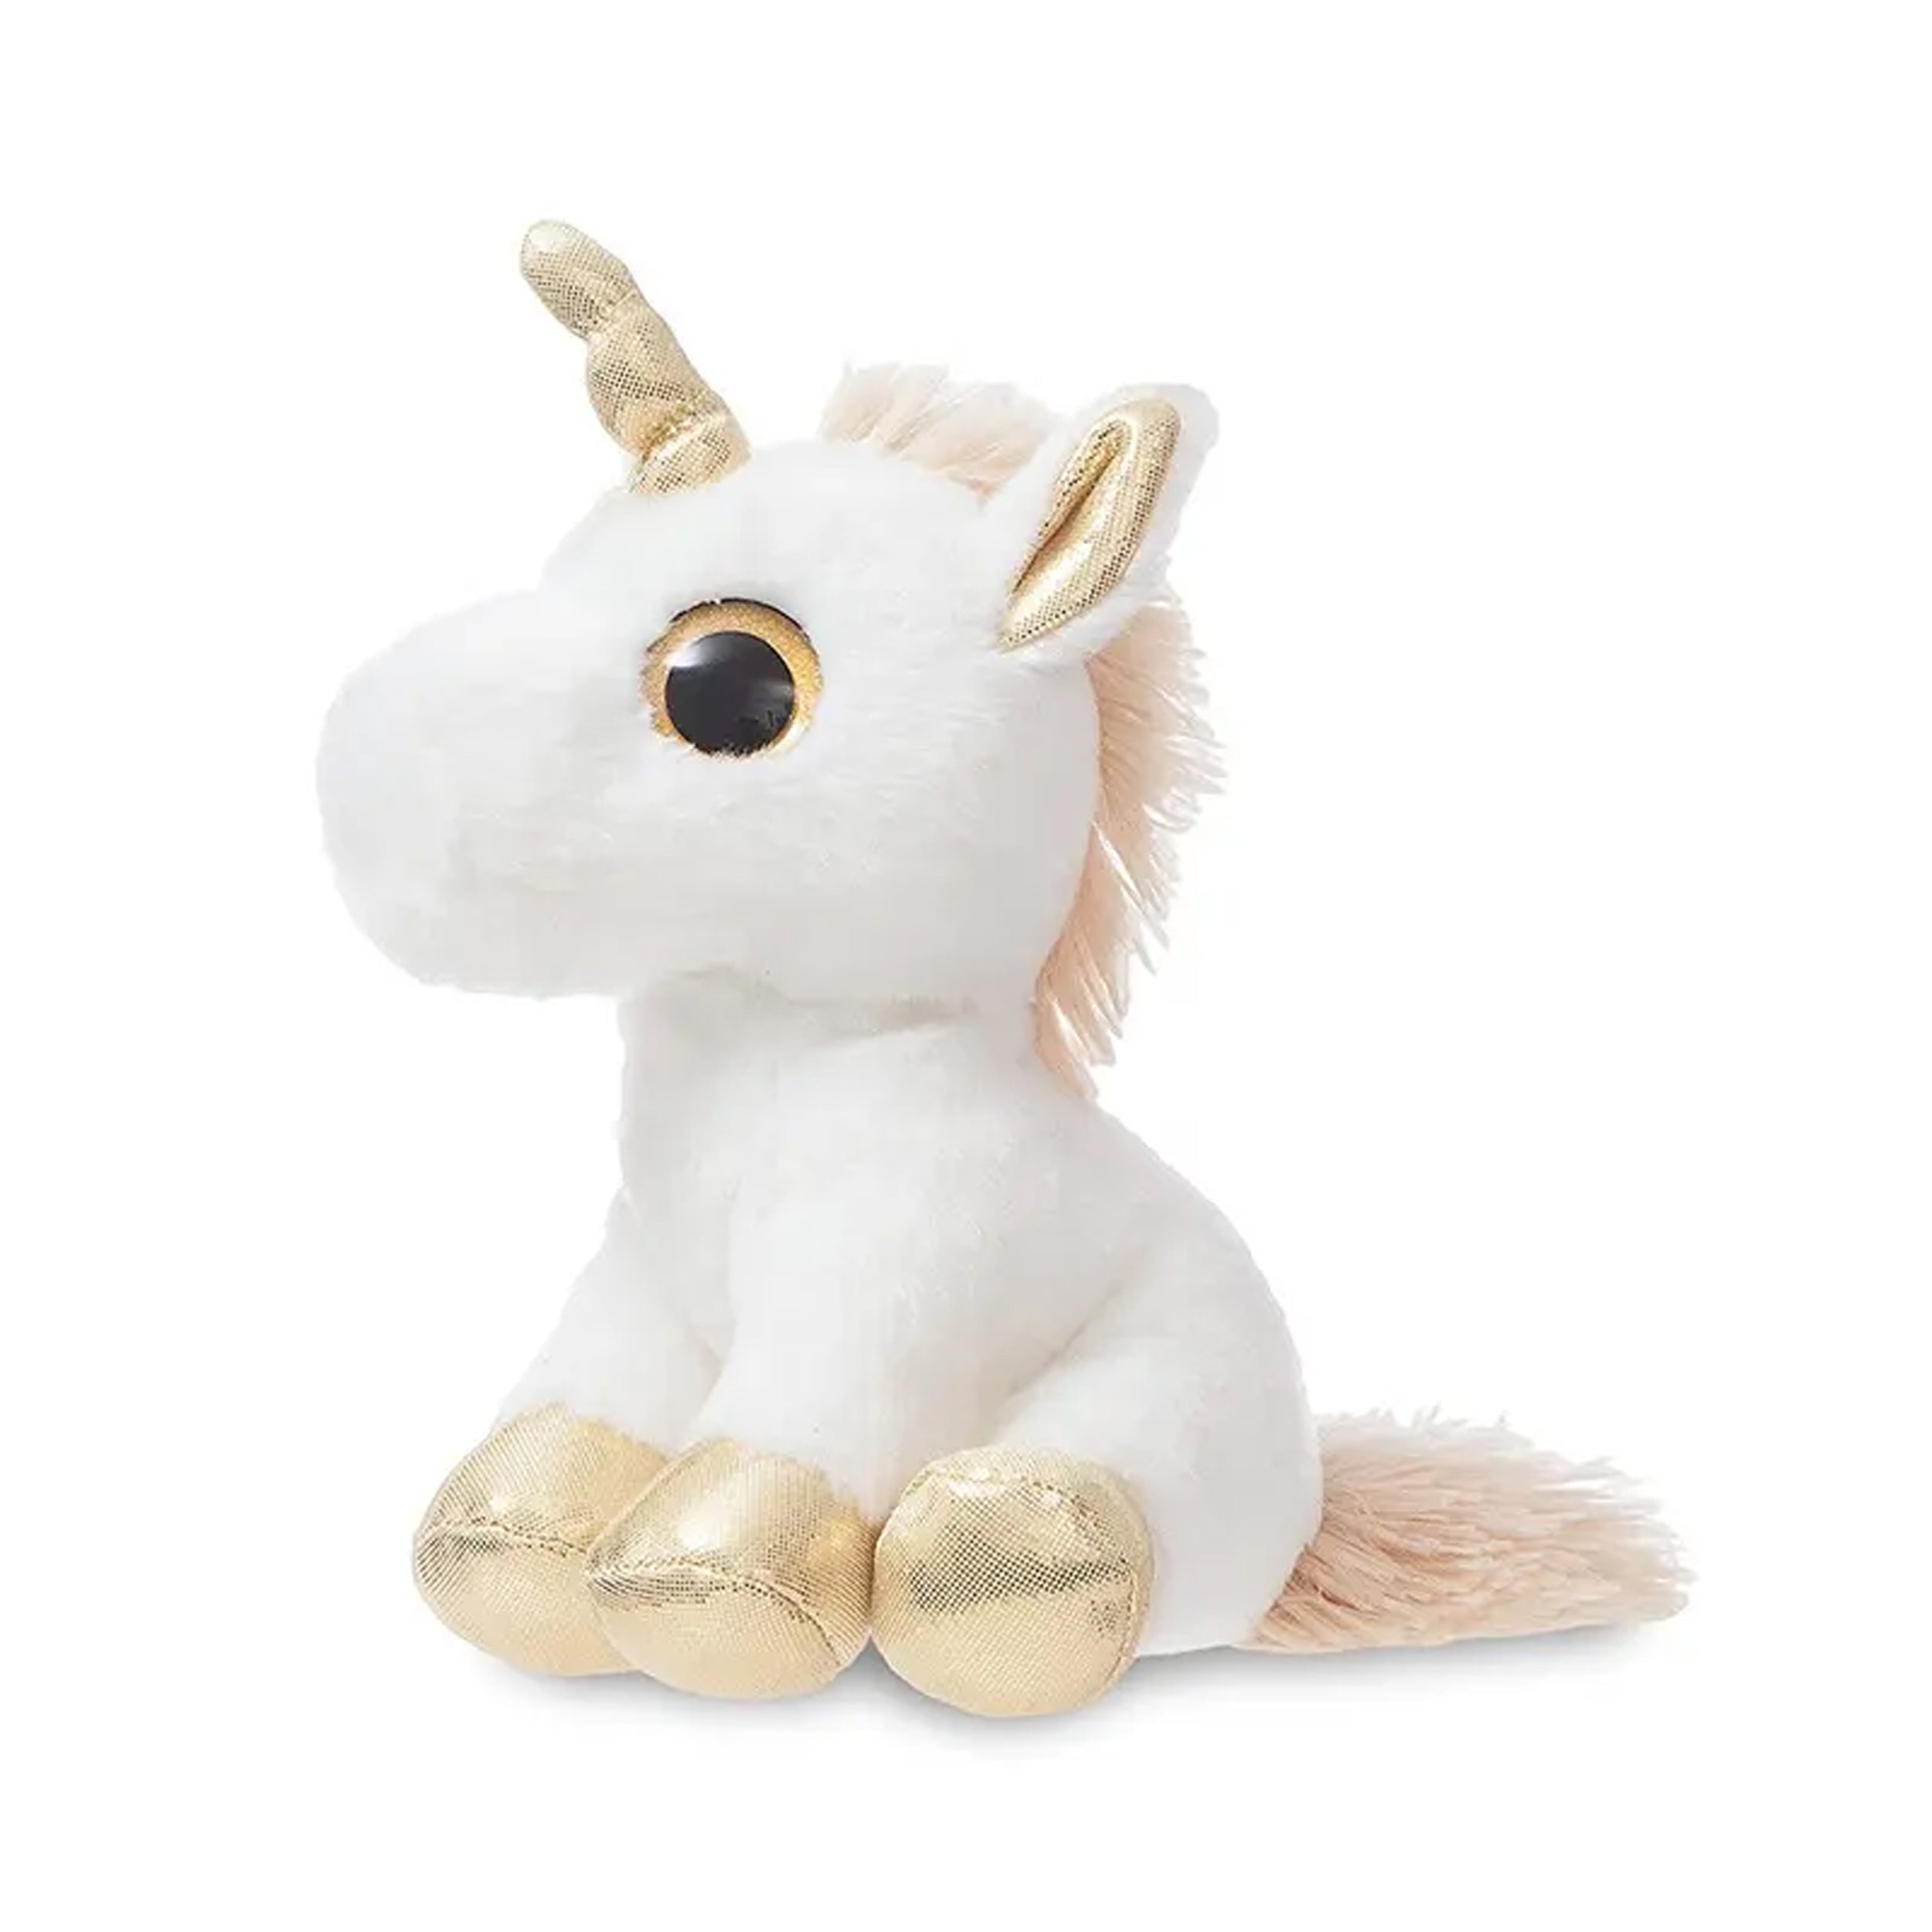 Unicorn Stuffed Animal Plush Toy